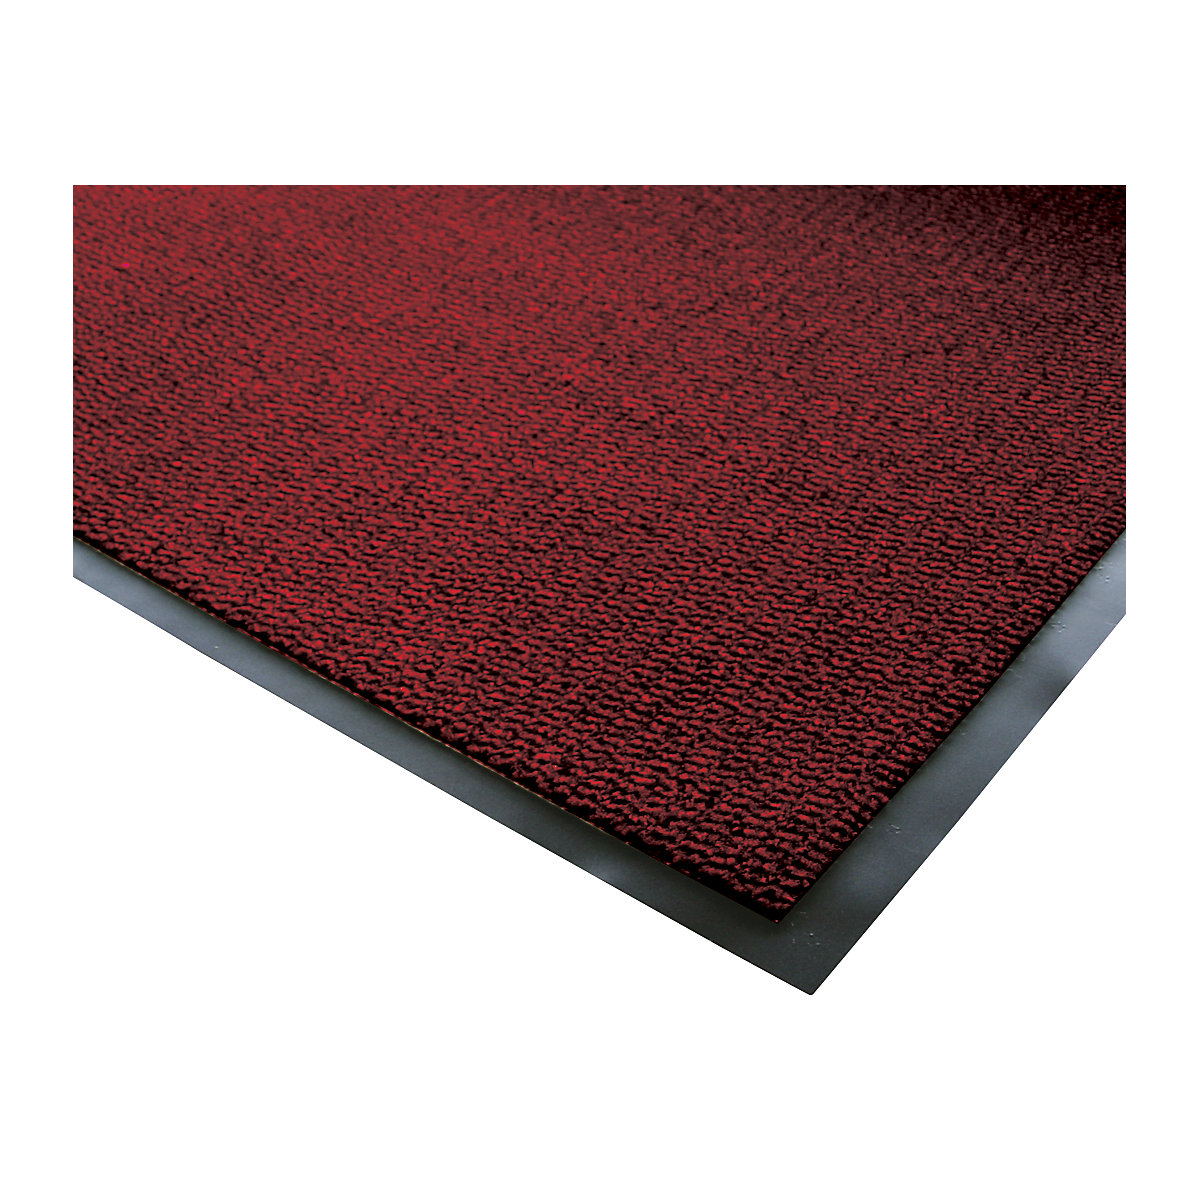 Entrance matting for indoor use, polypropylene pile - COBA